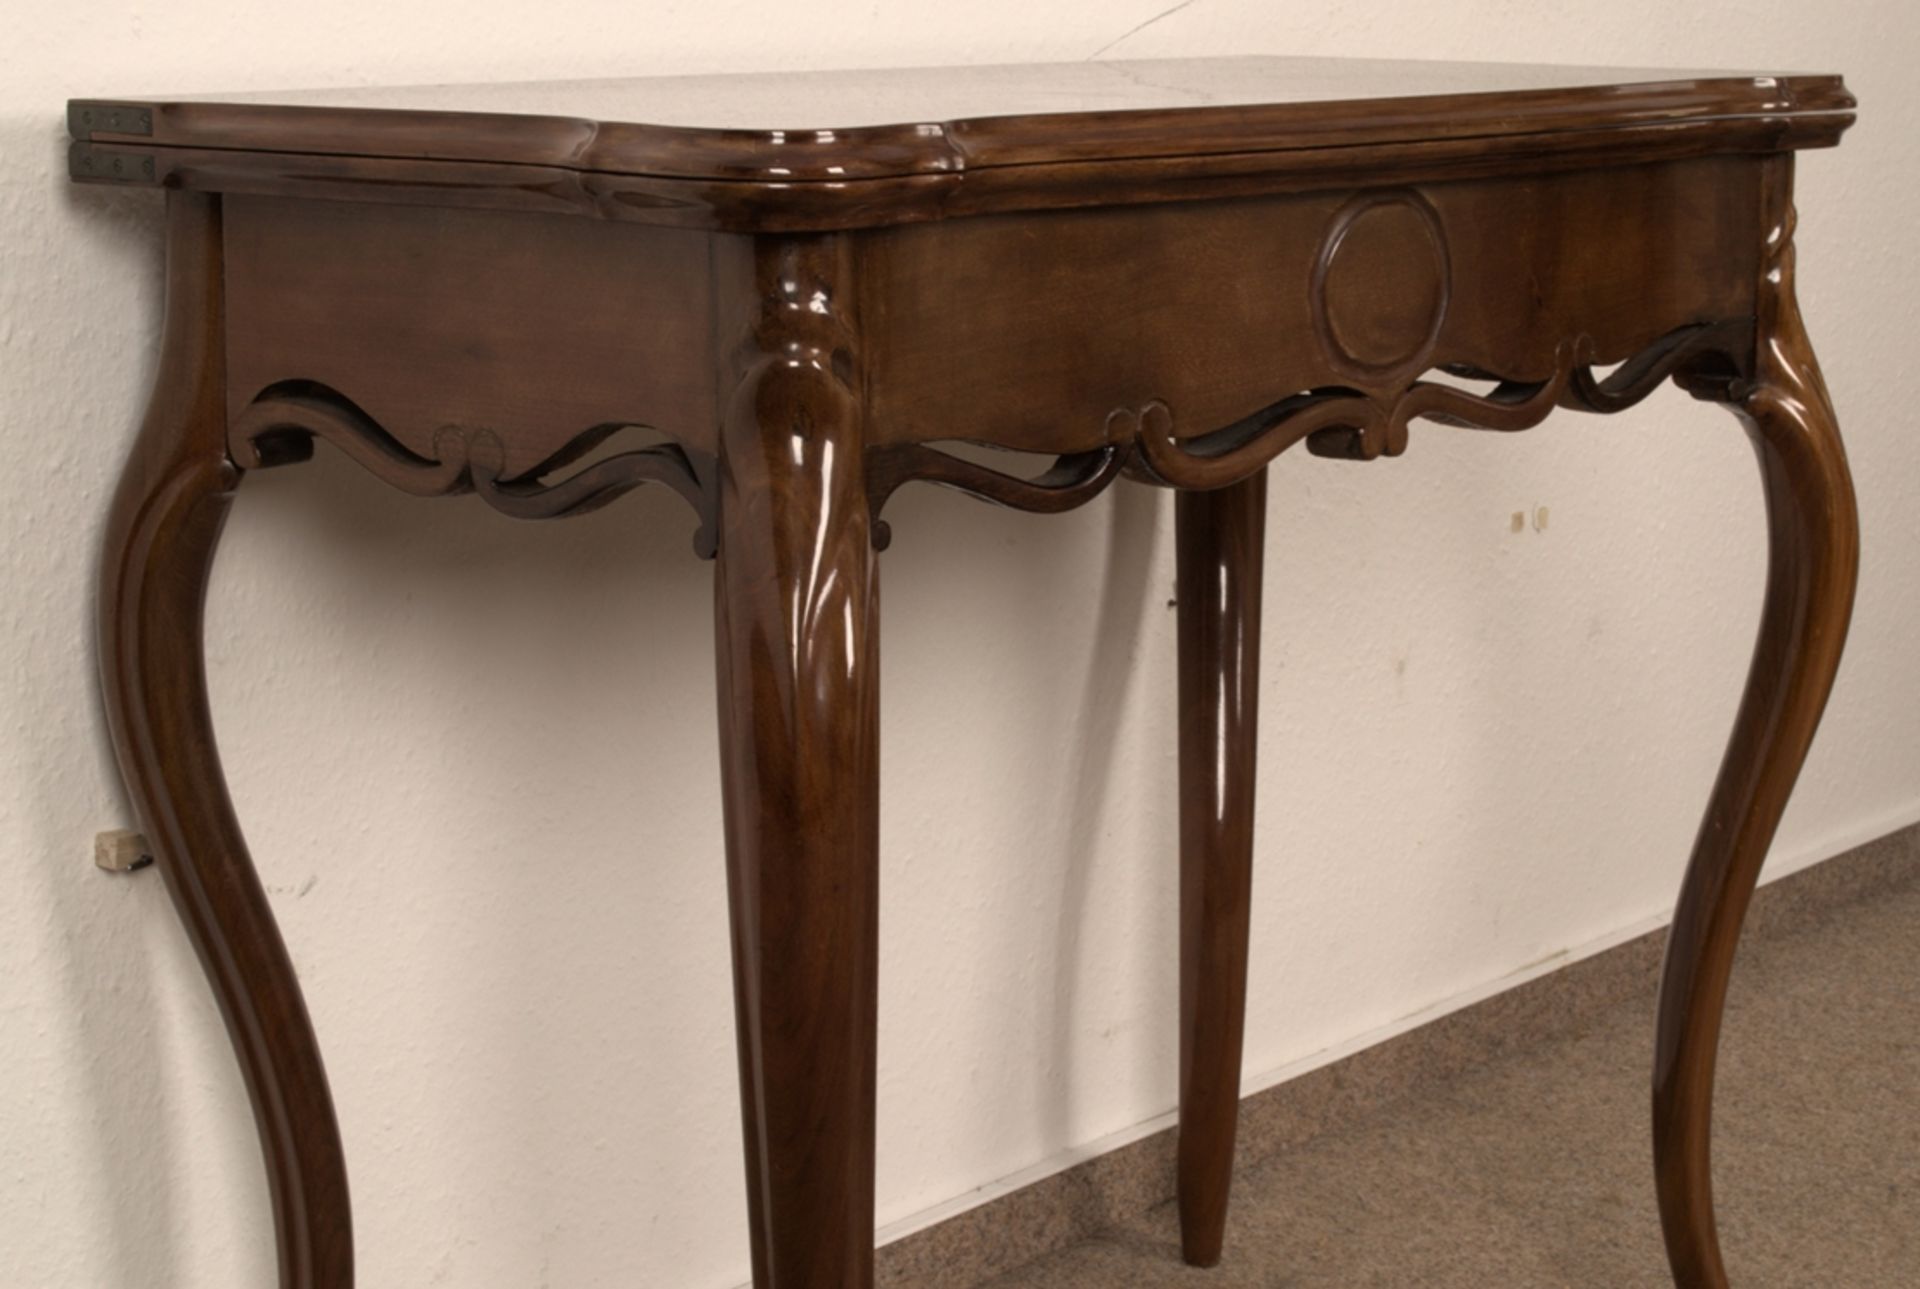 Konsoltisch/Spieltisch. Louis Philippe um 1900, Nussbaum massiv & furniert, ältere Restauration, - Bild 3 aus 10